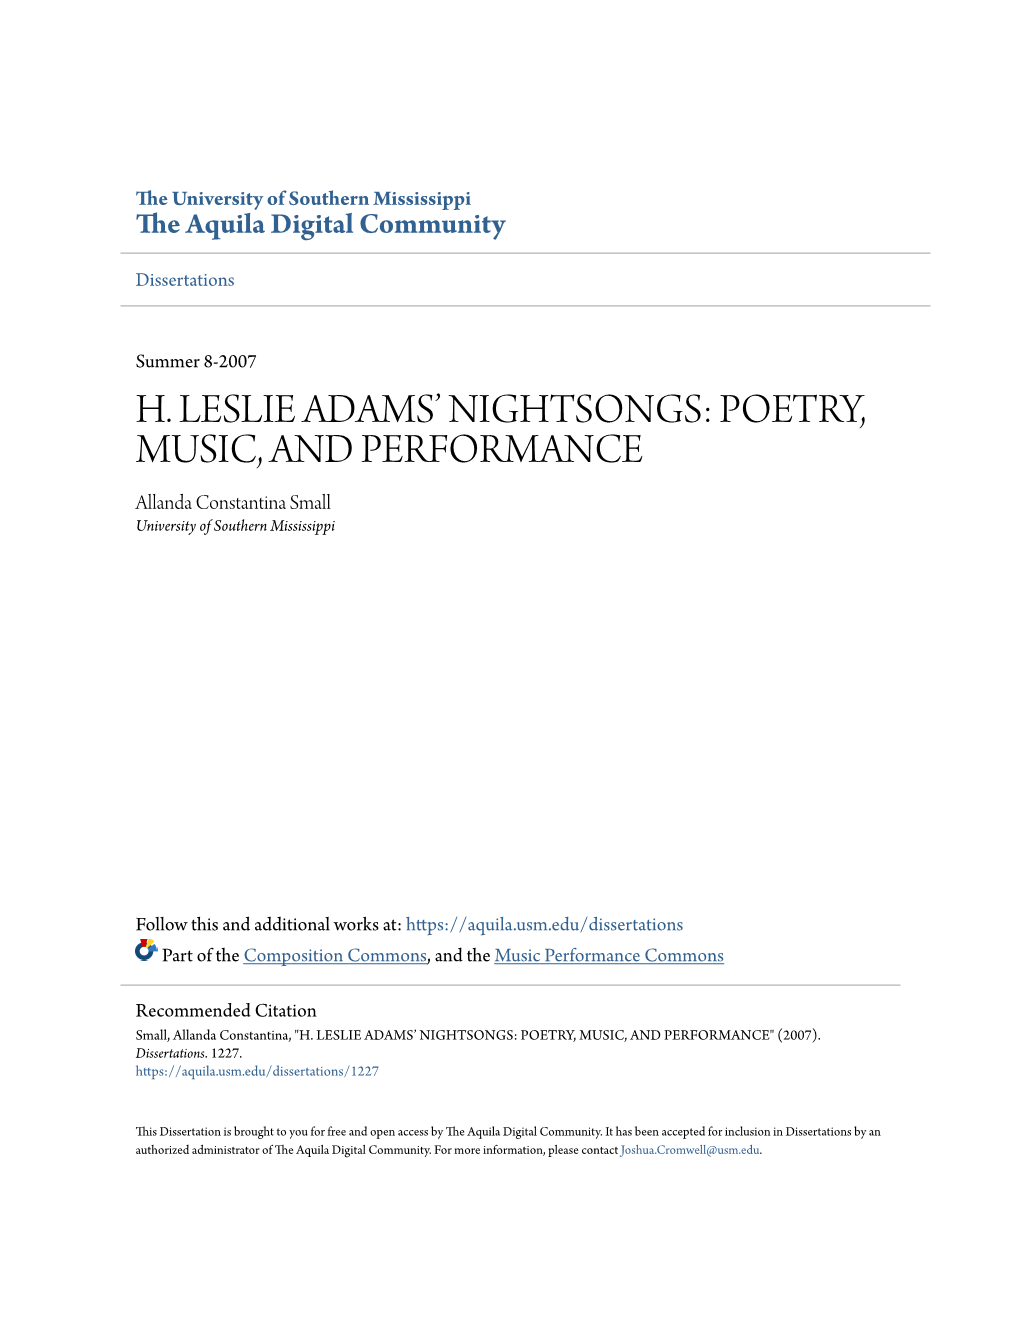 H. Leslie Adams' Nightsongs: Poetry, Music, and Performance